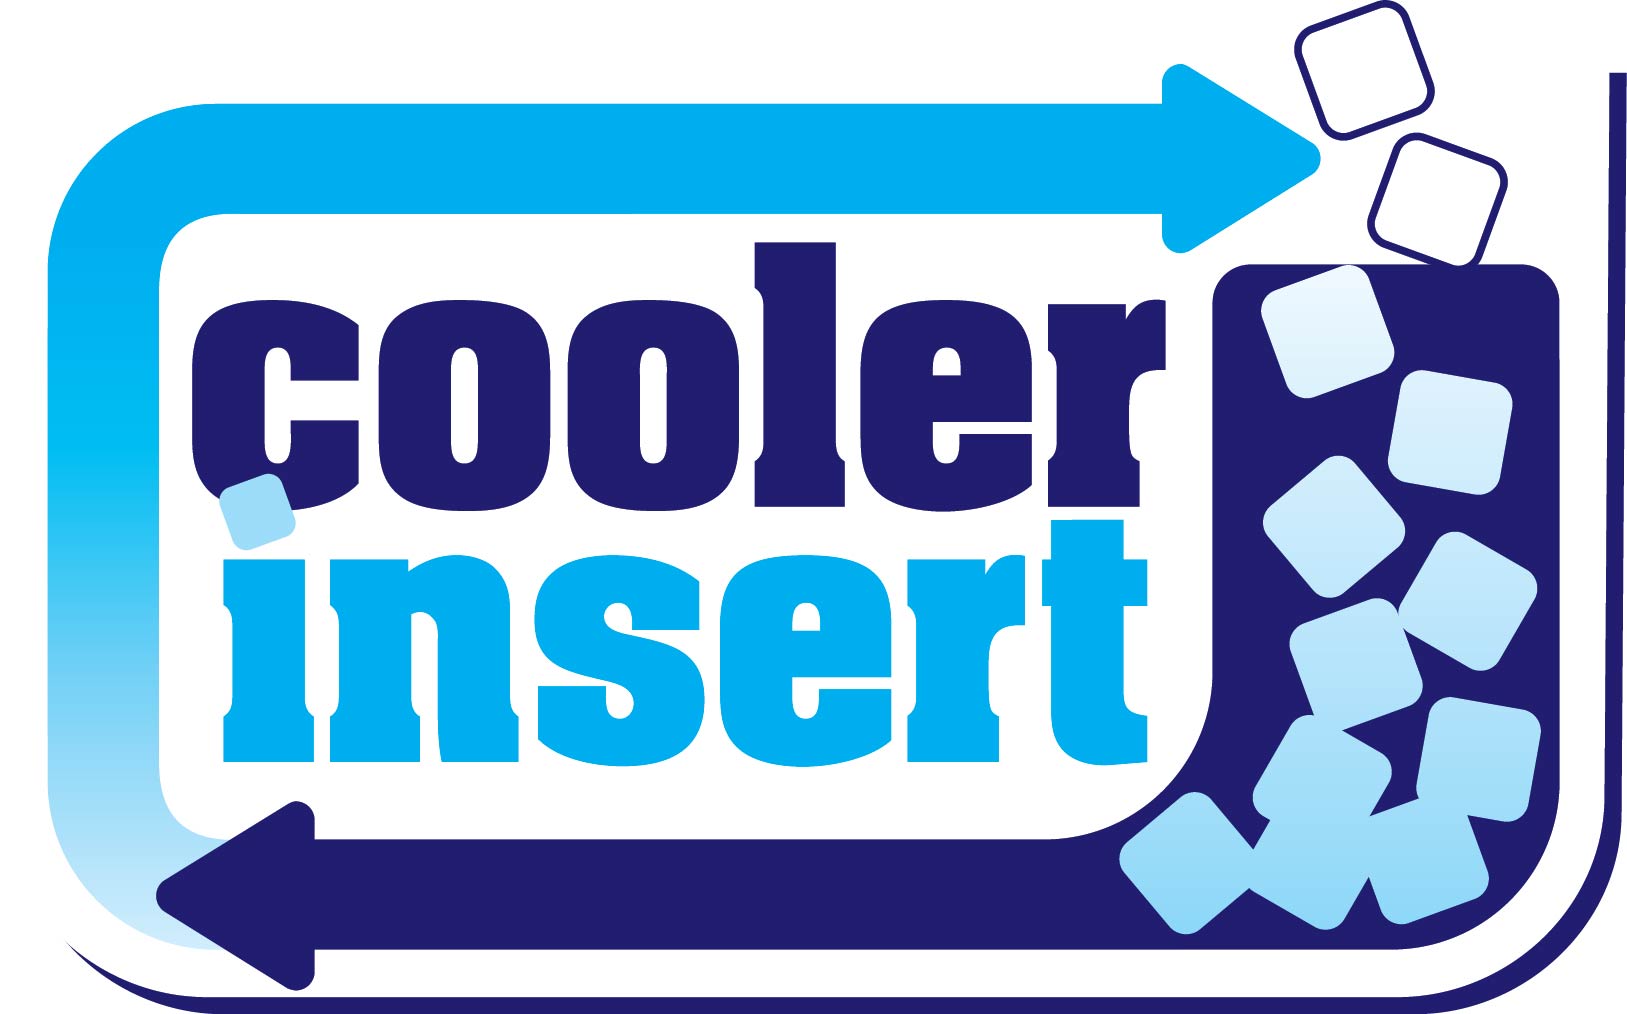 Cooler Insert